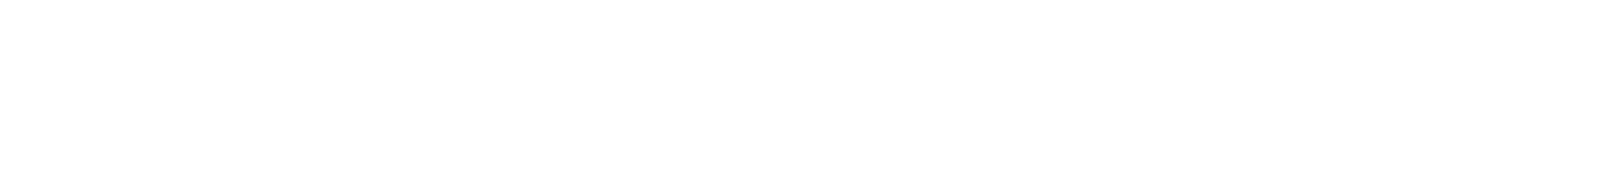 Meta (Facebook) logo large for dark backgrounds (transparent PNG)